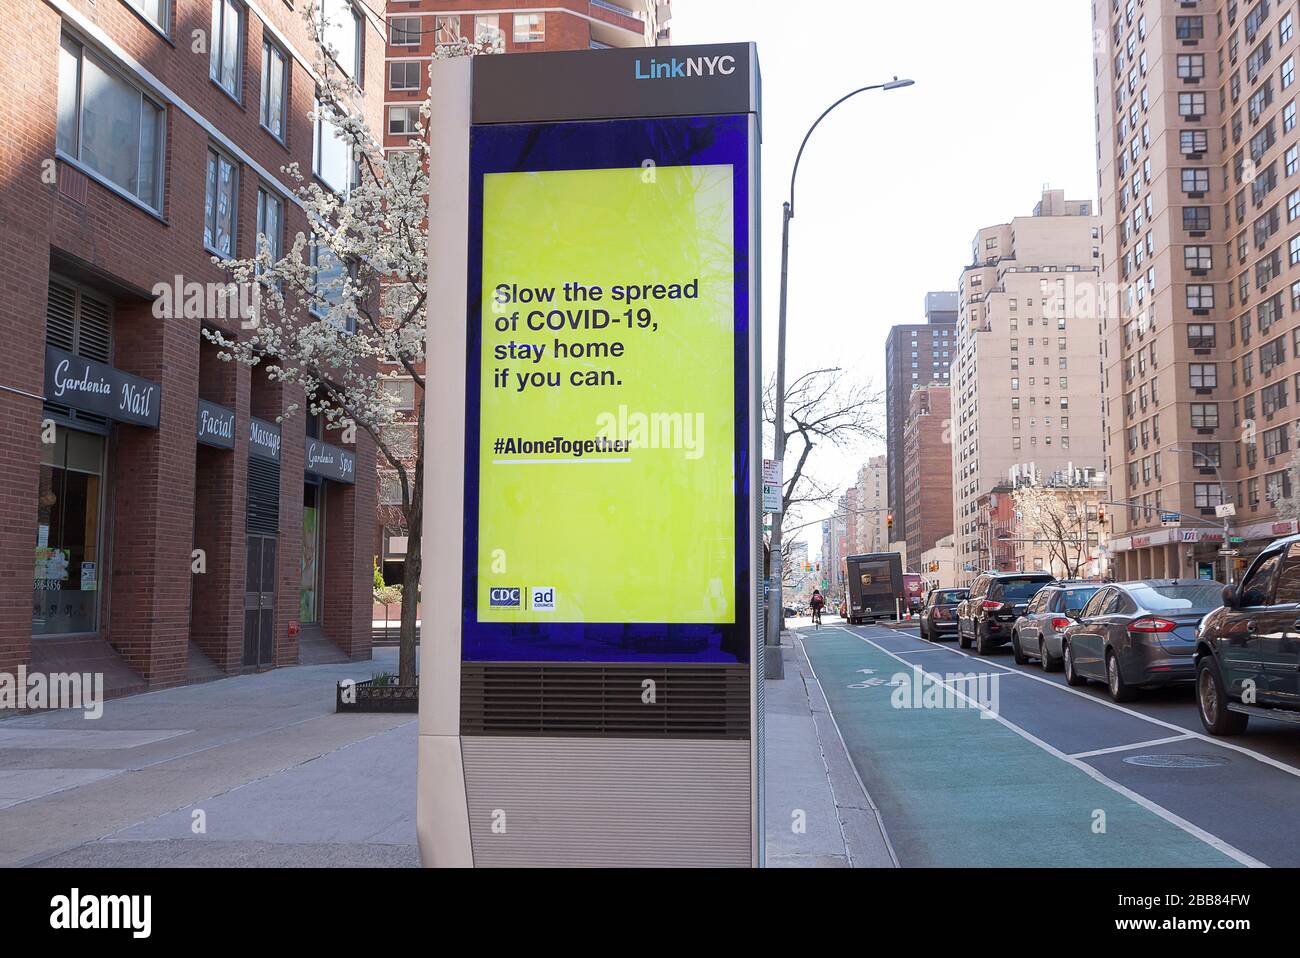 Kiosque numérique LinkNYC sur le trottoir affichant le message Covid-19 (coronavirus) pour rester à la maison. Banque D'Images